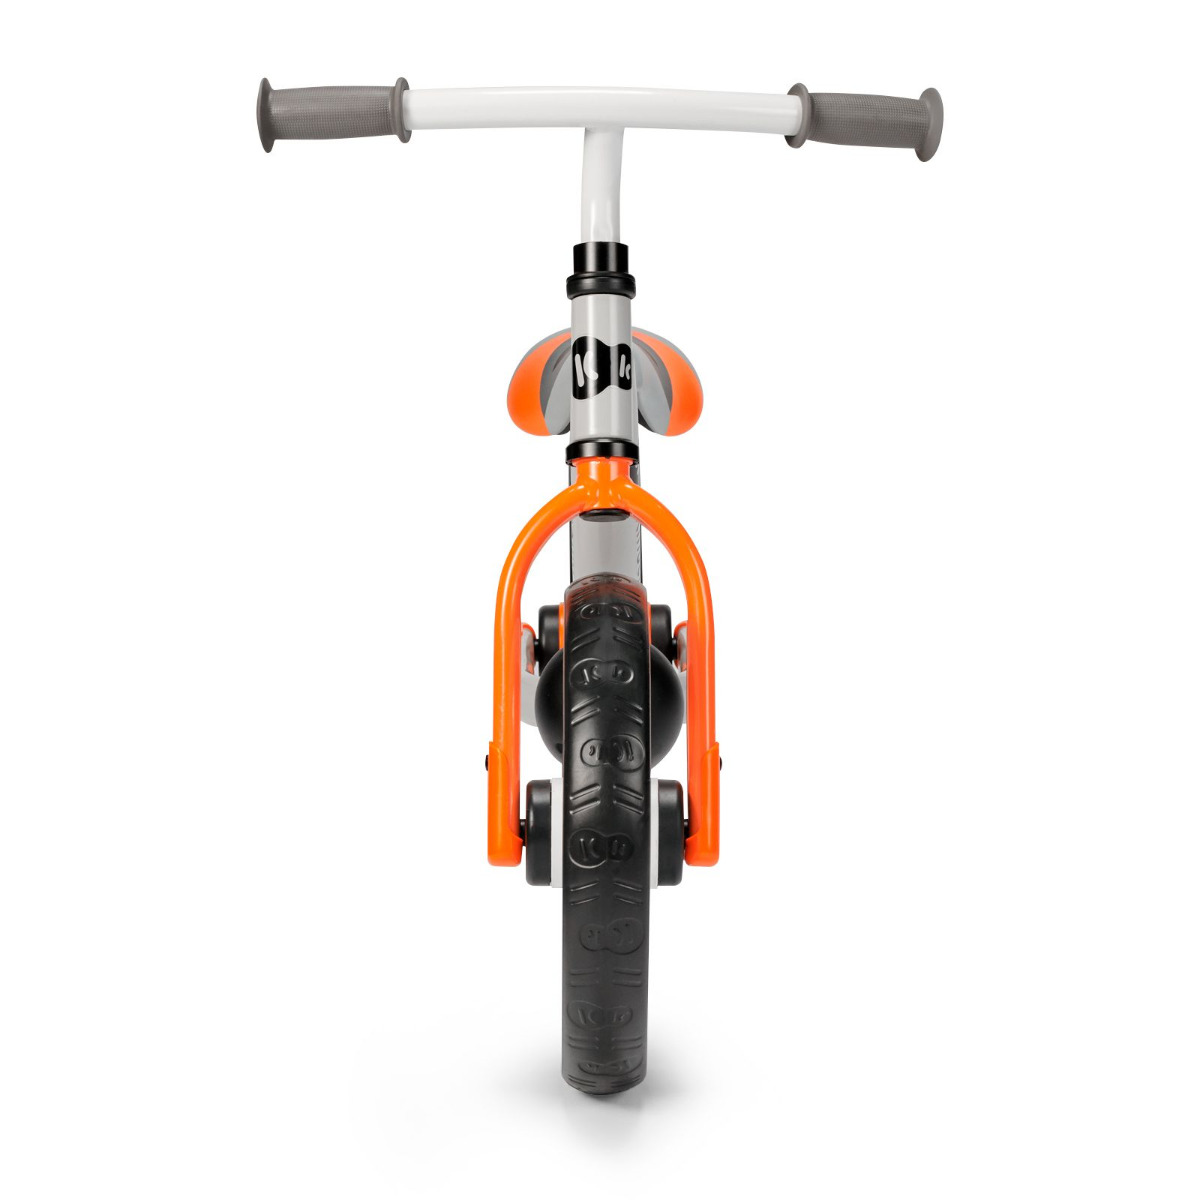 Bicicleta de equilibrio 2WAY NEXT Naranja